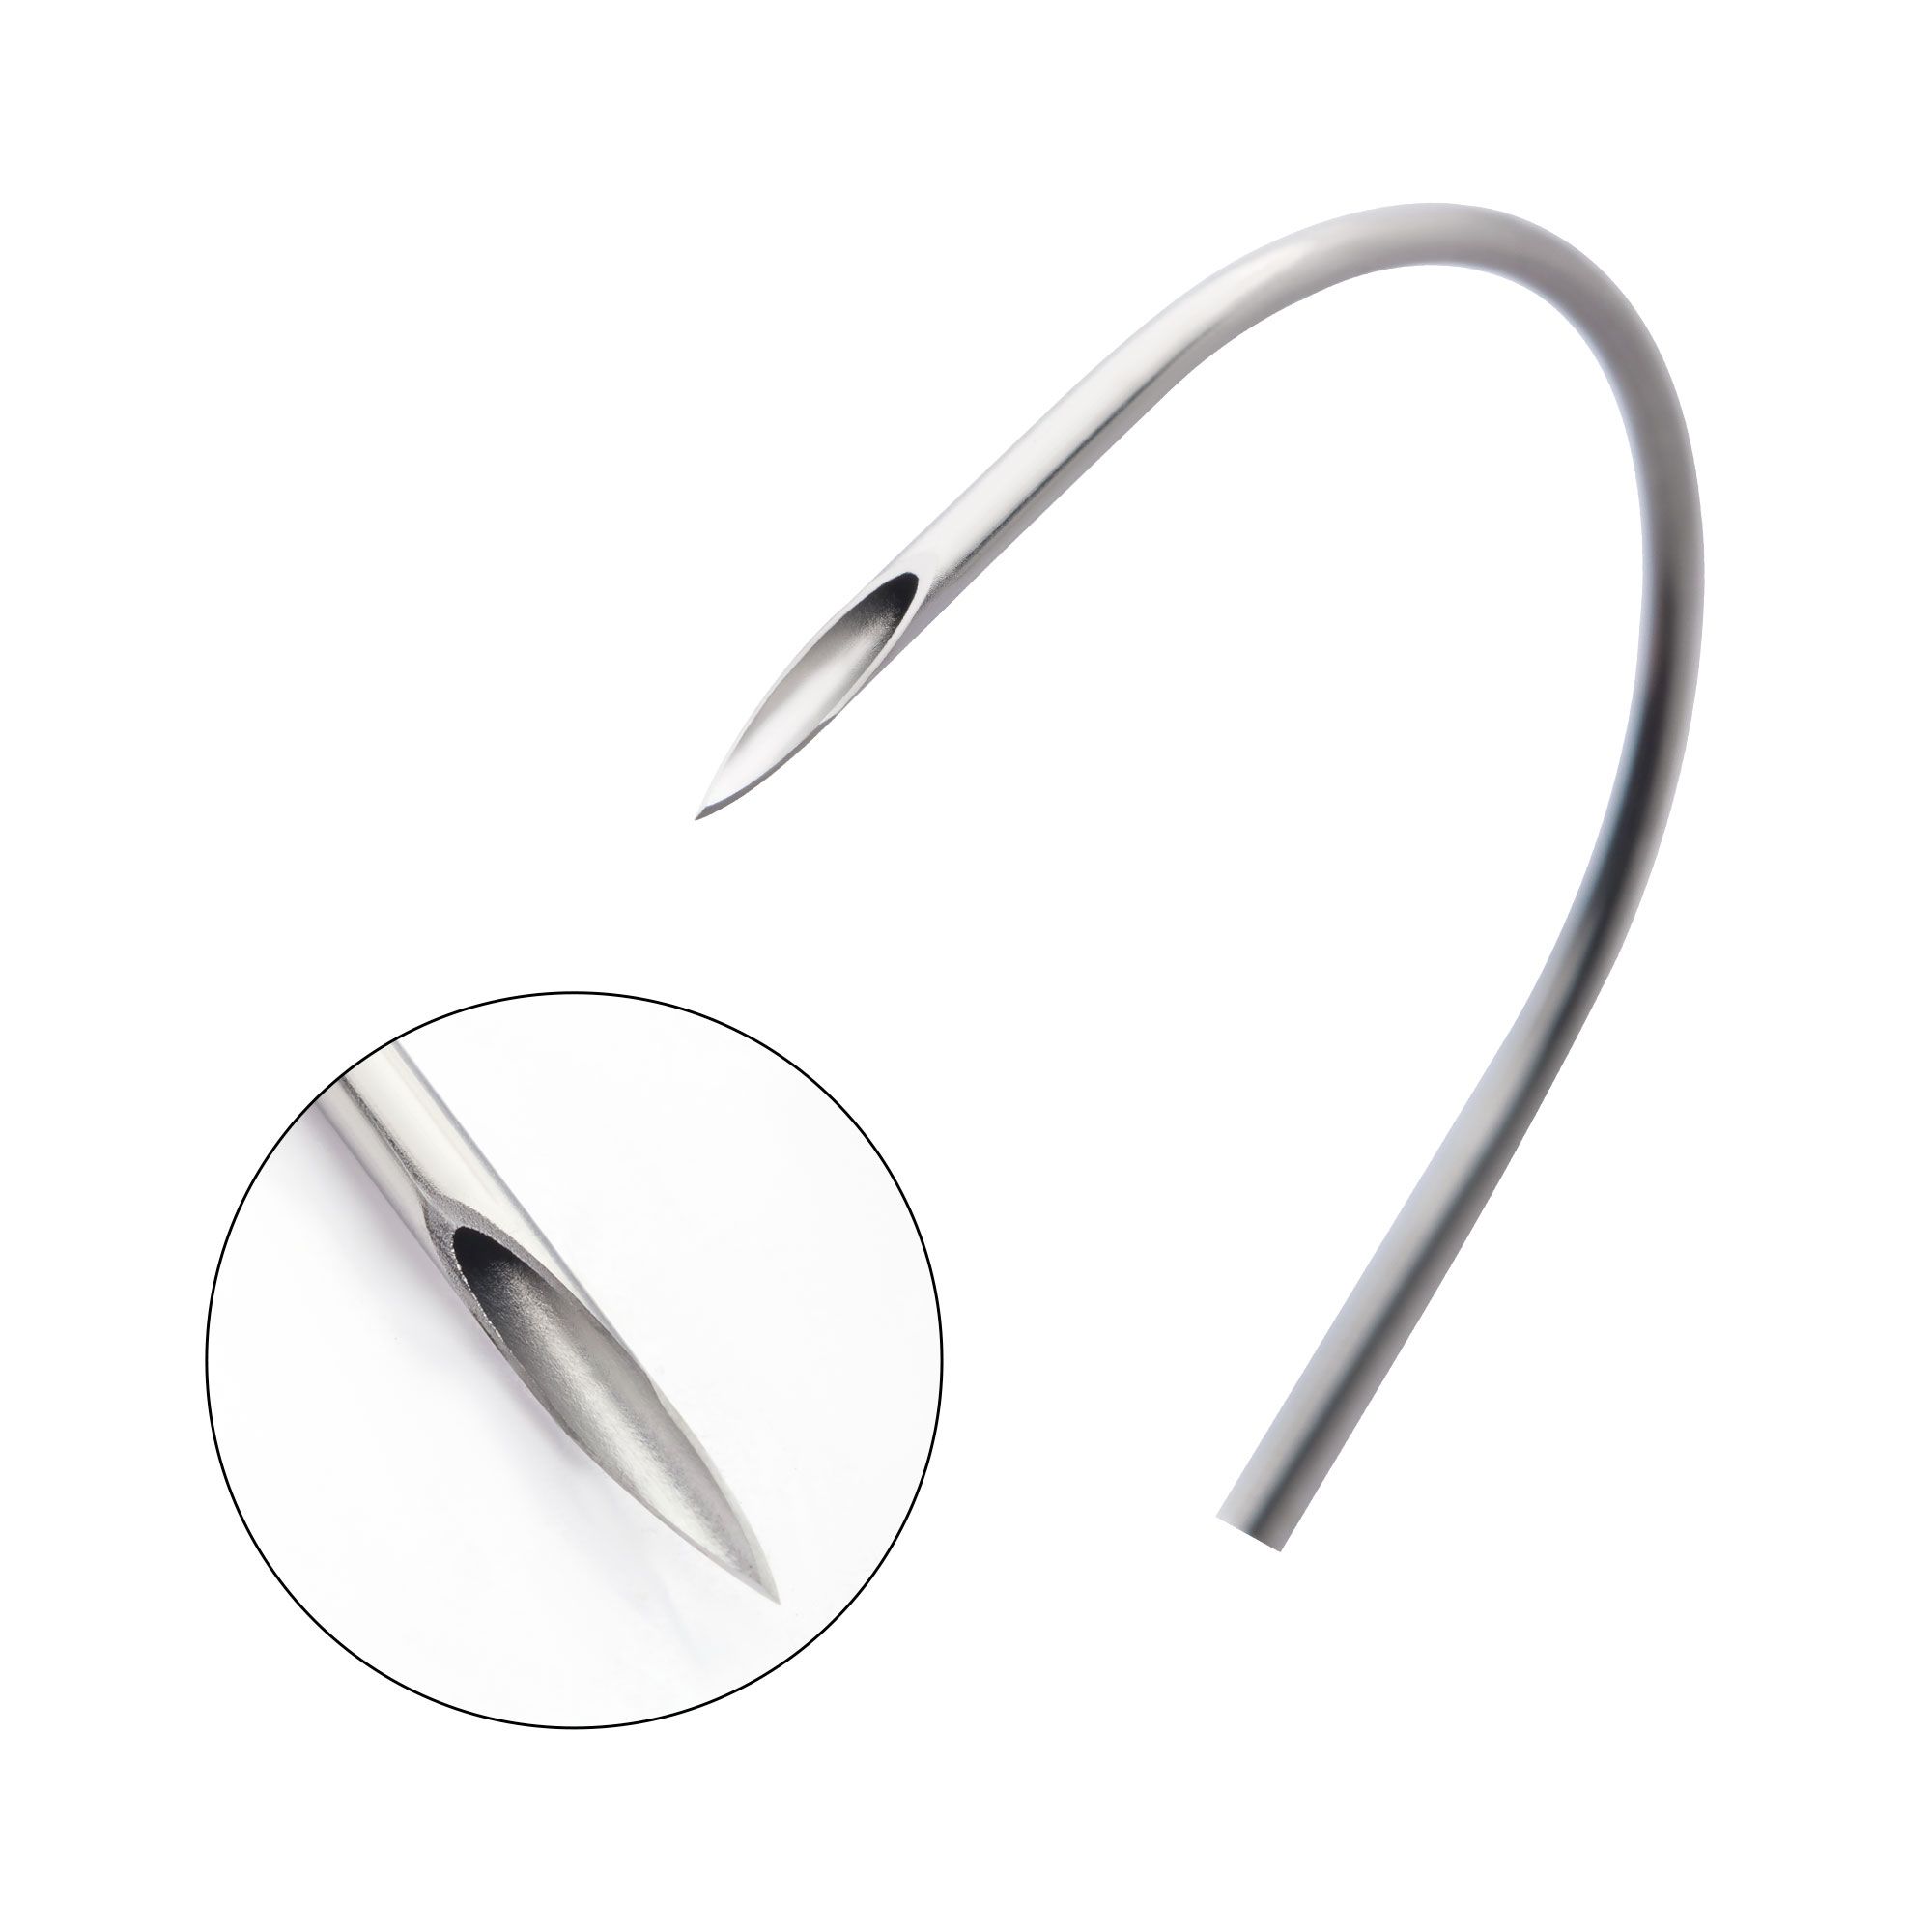 Sterilized Tri-Bevel Laser Sharpened Curved Needles. 40pcs per pack - 1 Pack -Rebel Bod-RebelBod